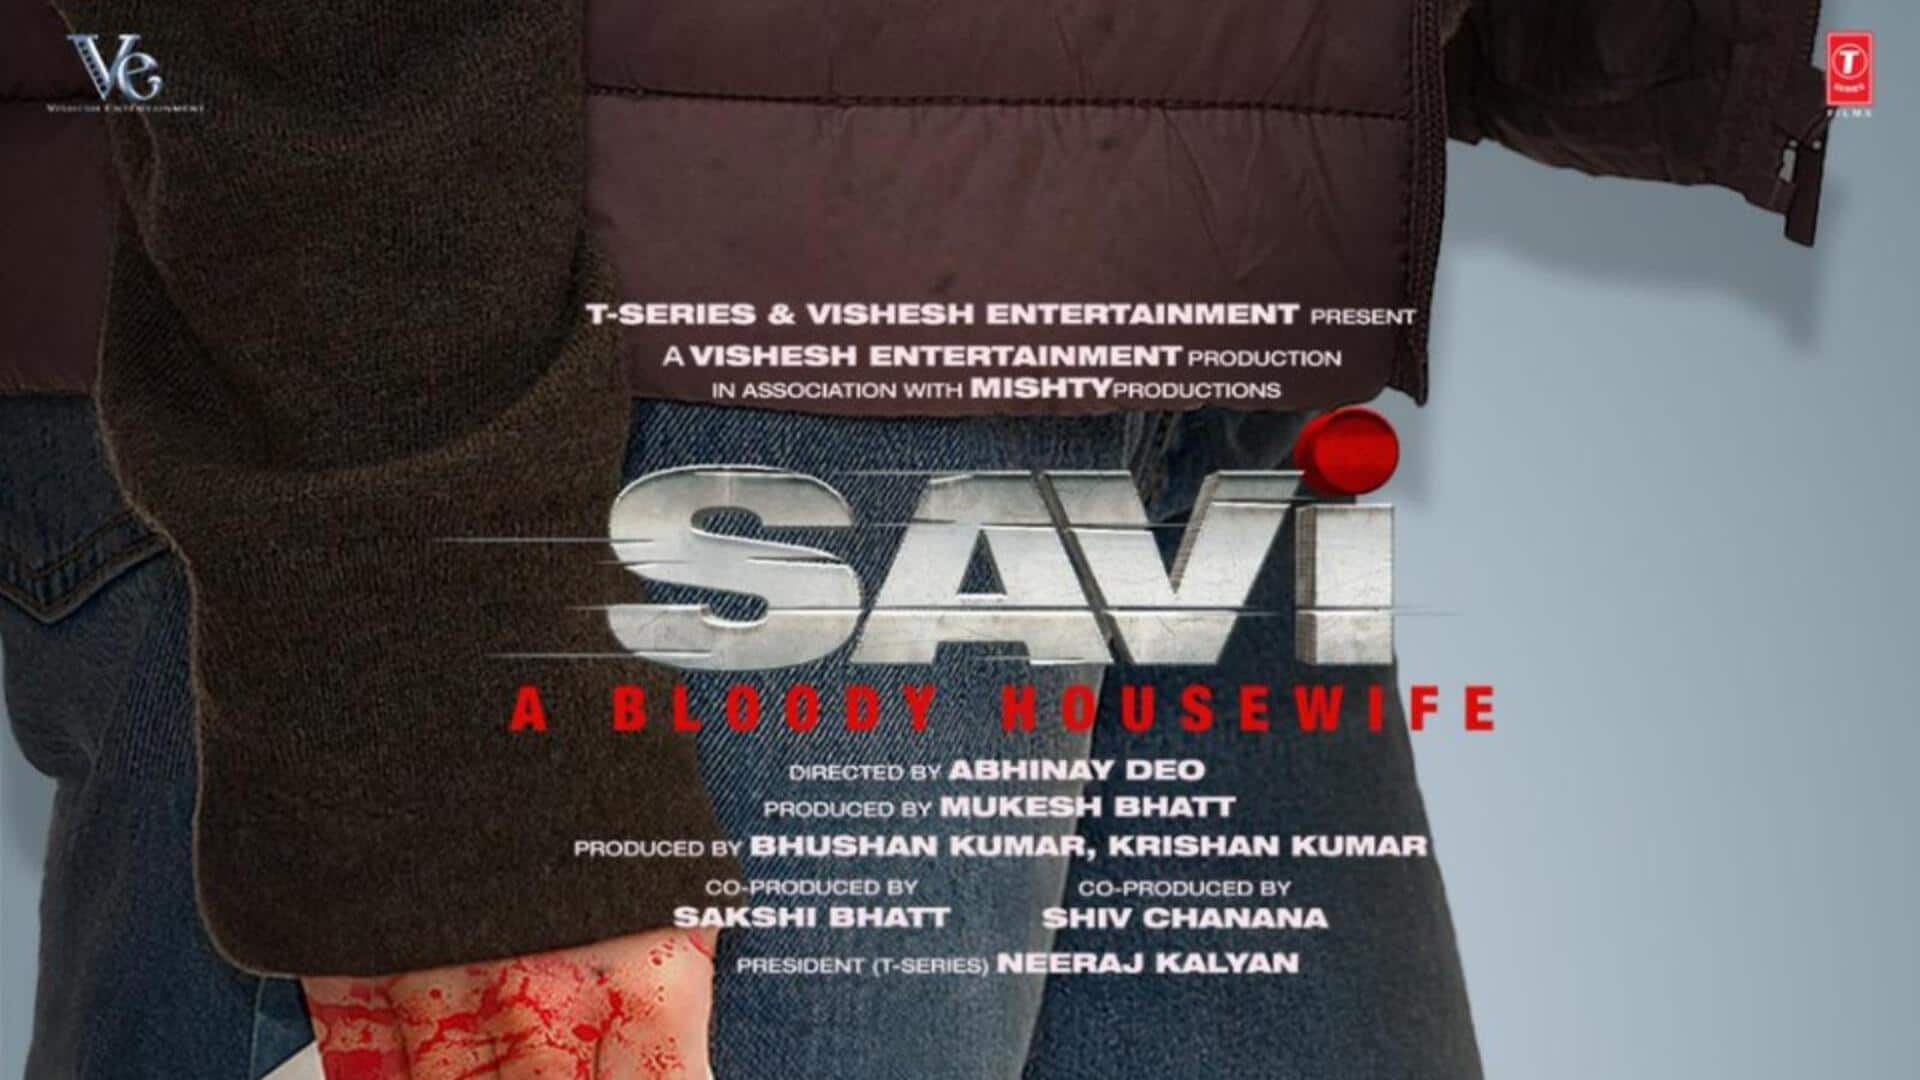 नेटफ्लिक्स ने खरीदे दिव्या खोसला कुमार की फिल्म 'सवी: ए ब्लडी हाउसवाइफ' के OTT राइट्स 